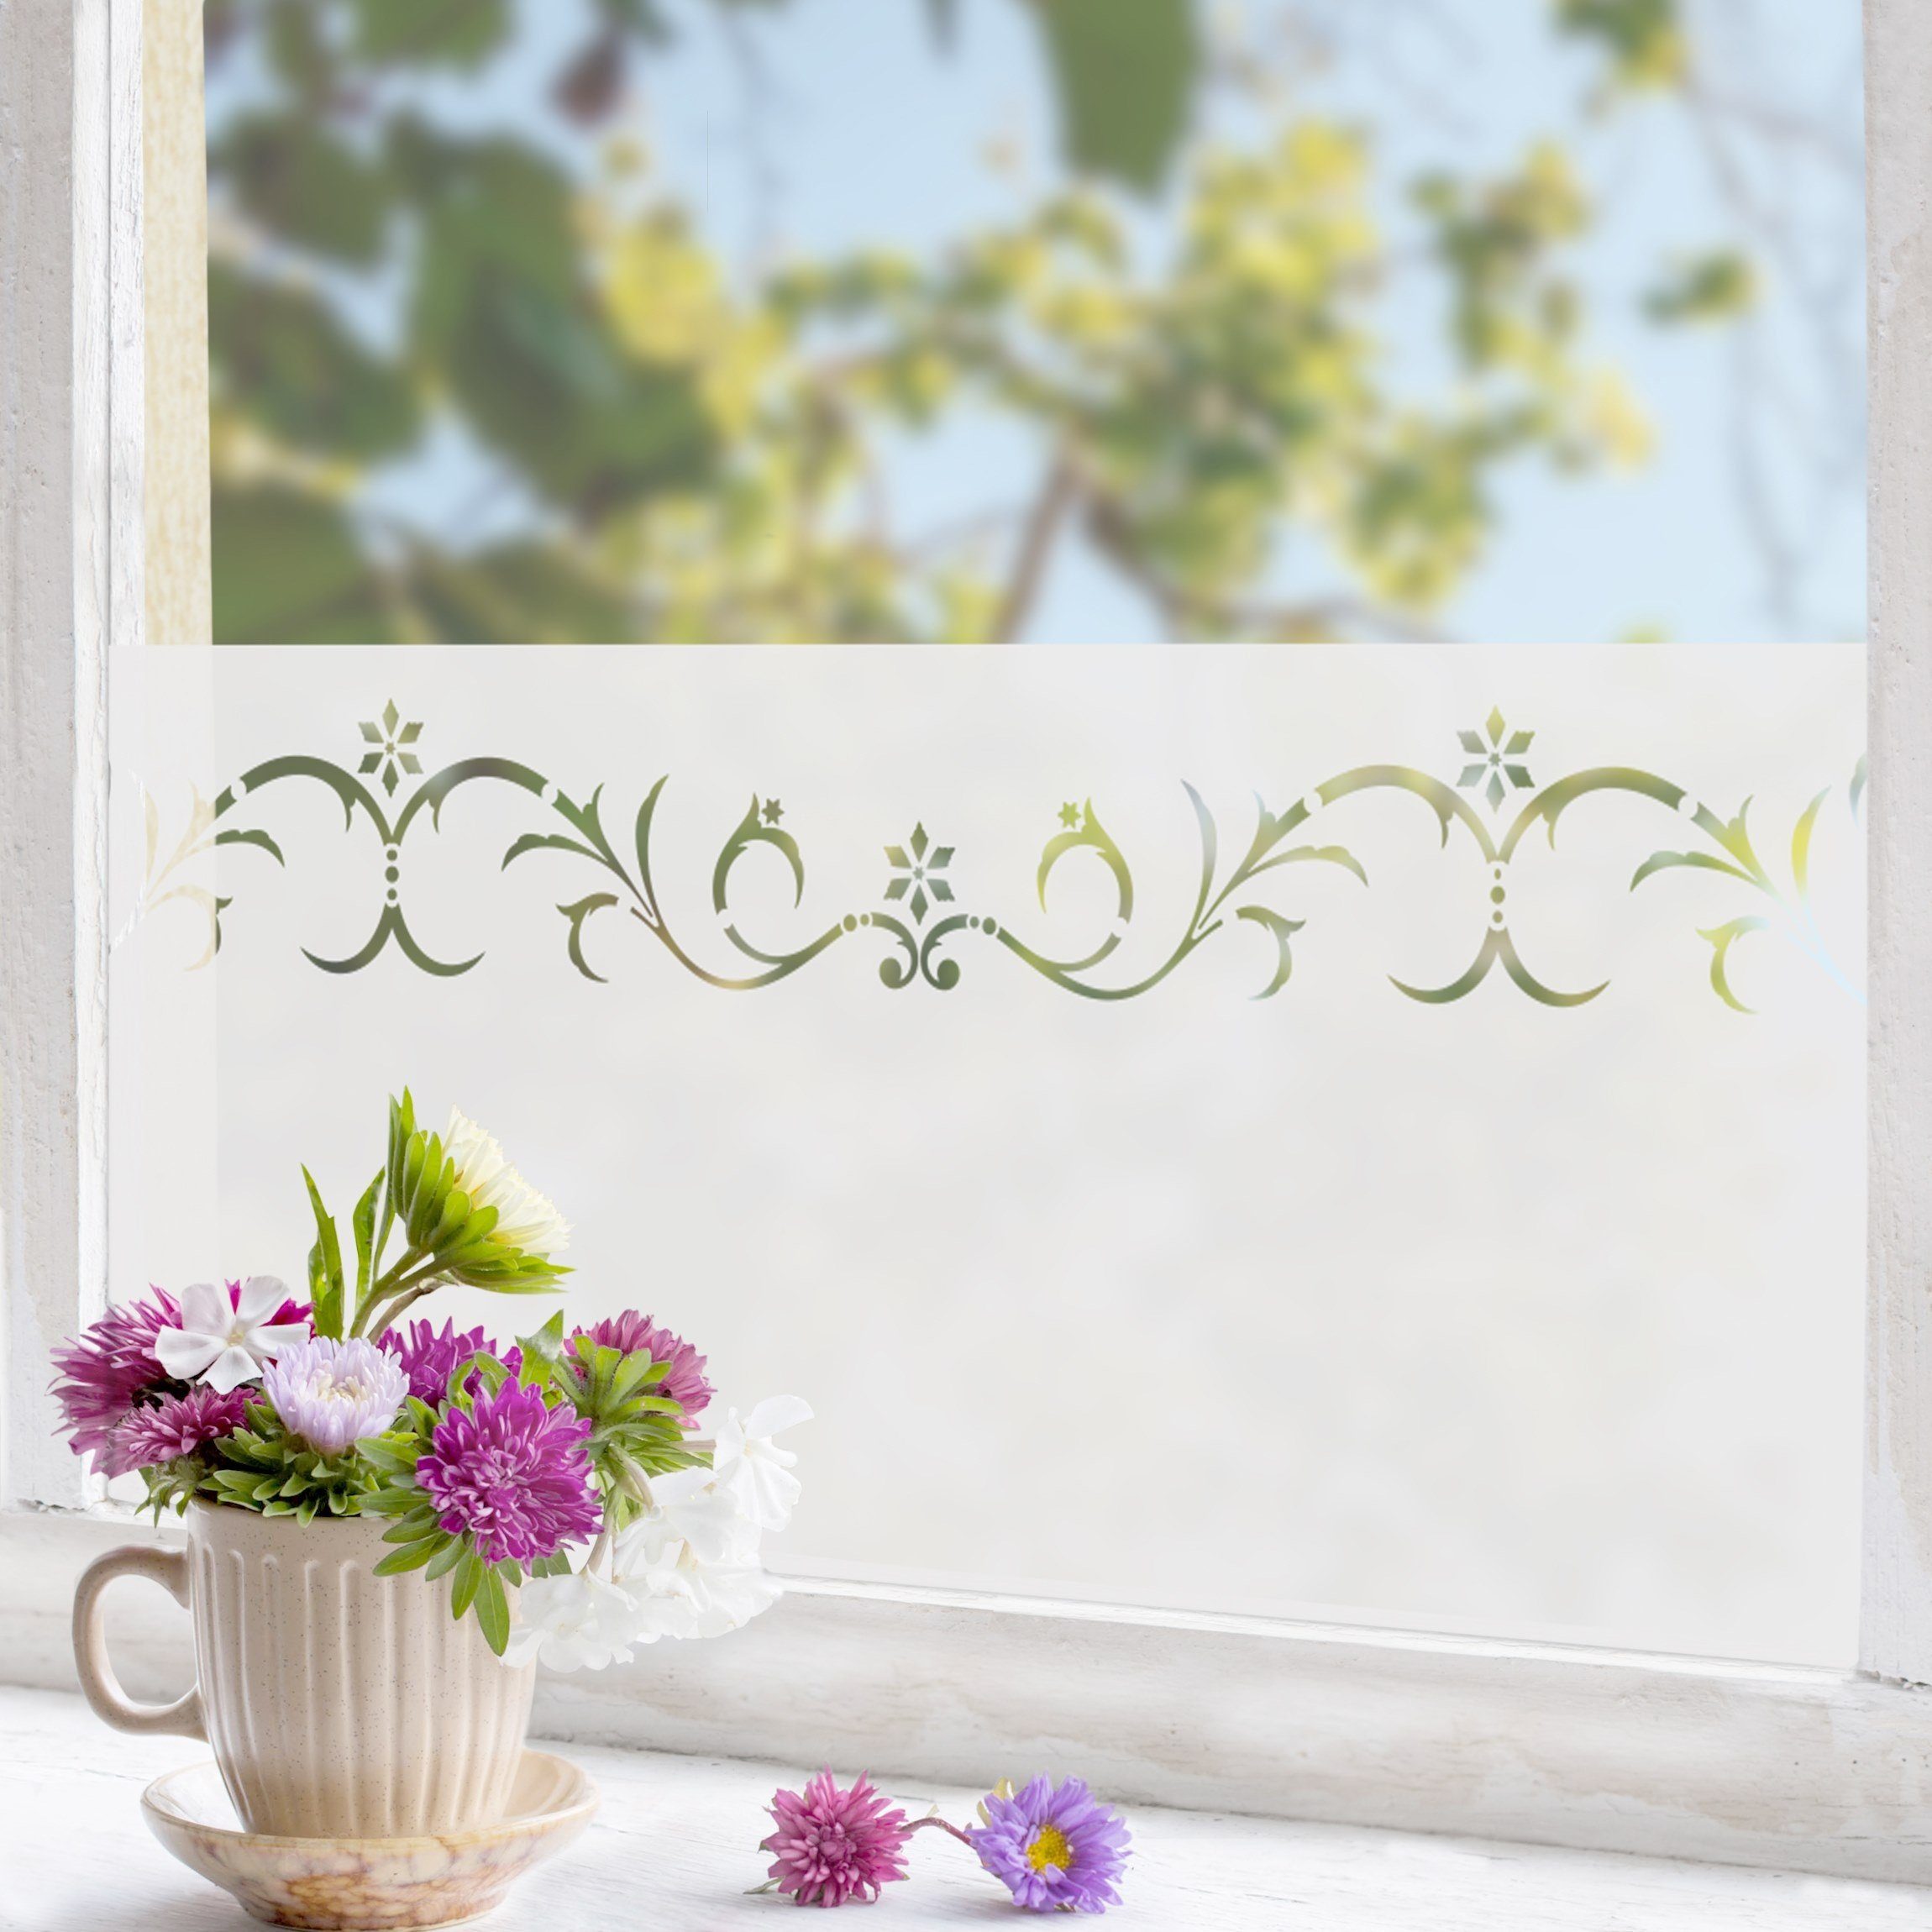 Fensterfolie statisch haftend Motiv Fensterdeko Blütenzauber